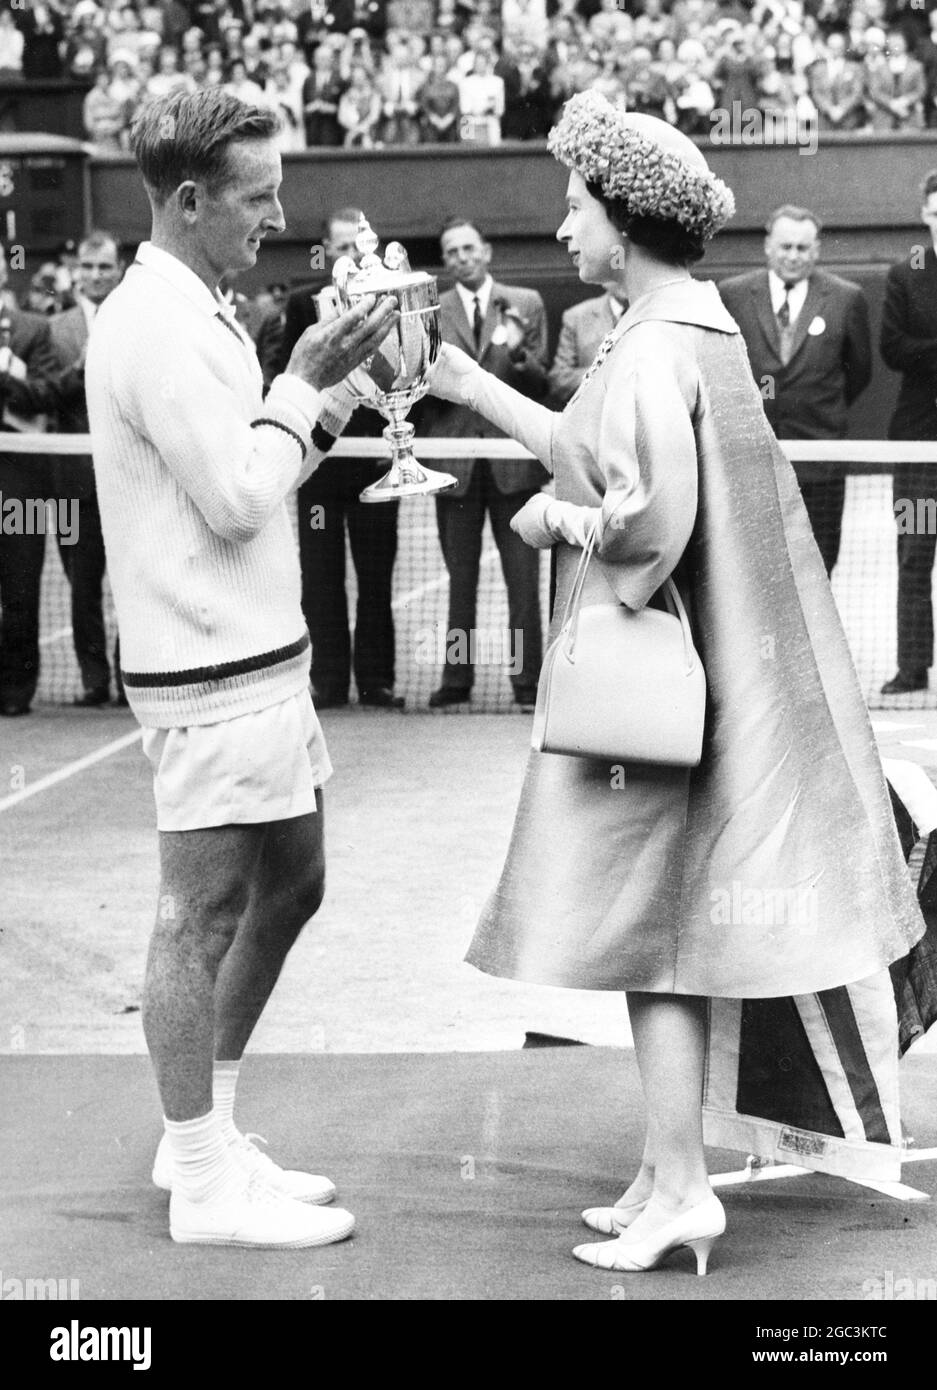 H M Queen überreicht Rod Laver aus Australien mit seiner Trophäe, nachdem er heute Nachmittag die Herren-Singles-Meisterschaft 1962 in Wimbledon gewonnen hat. Laver beendete den Grand Slam zuletzt erreicht von Donald Budge im Jahr 1938, die australische, französische, Wimbledon und United States Championships. Der australische Mulligan kämpfte tapfer, aber Laver stürmte am 6-2 6-2 6-1 6. Juli 1962 zum Sieg Stockfoto